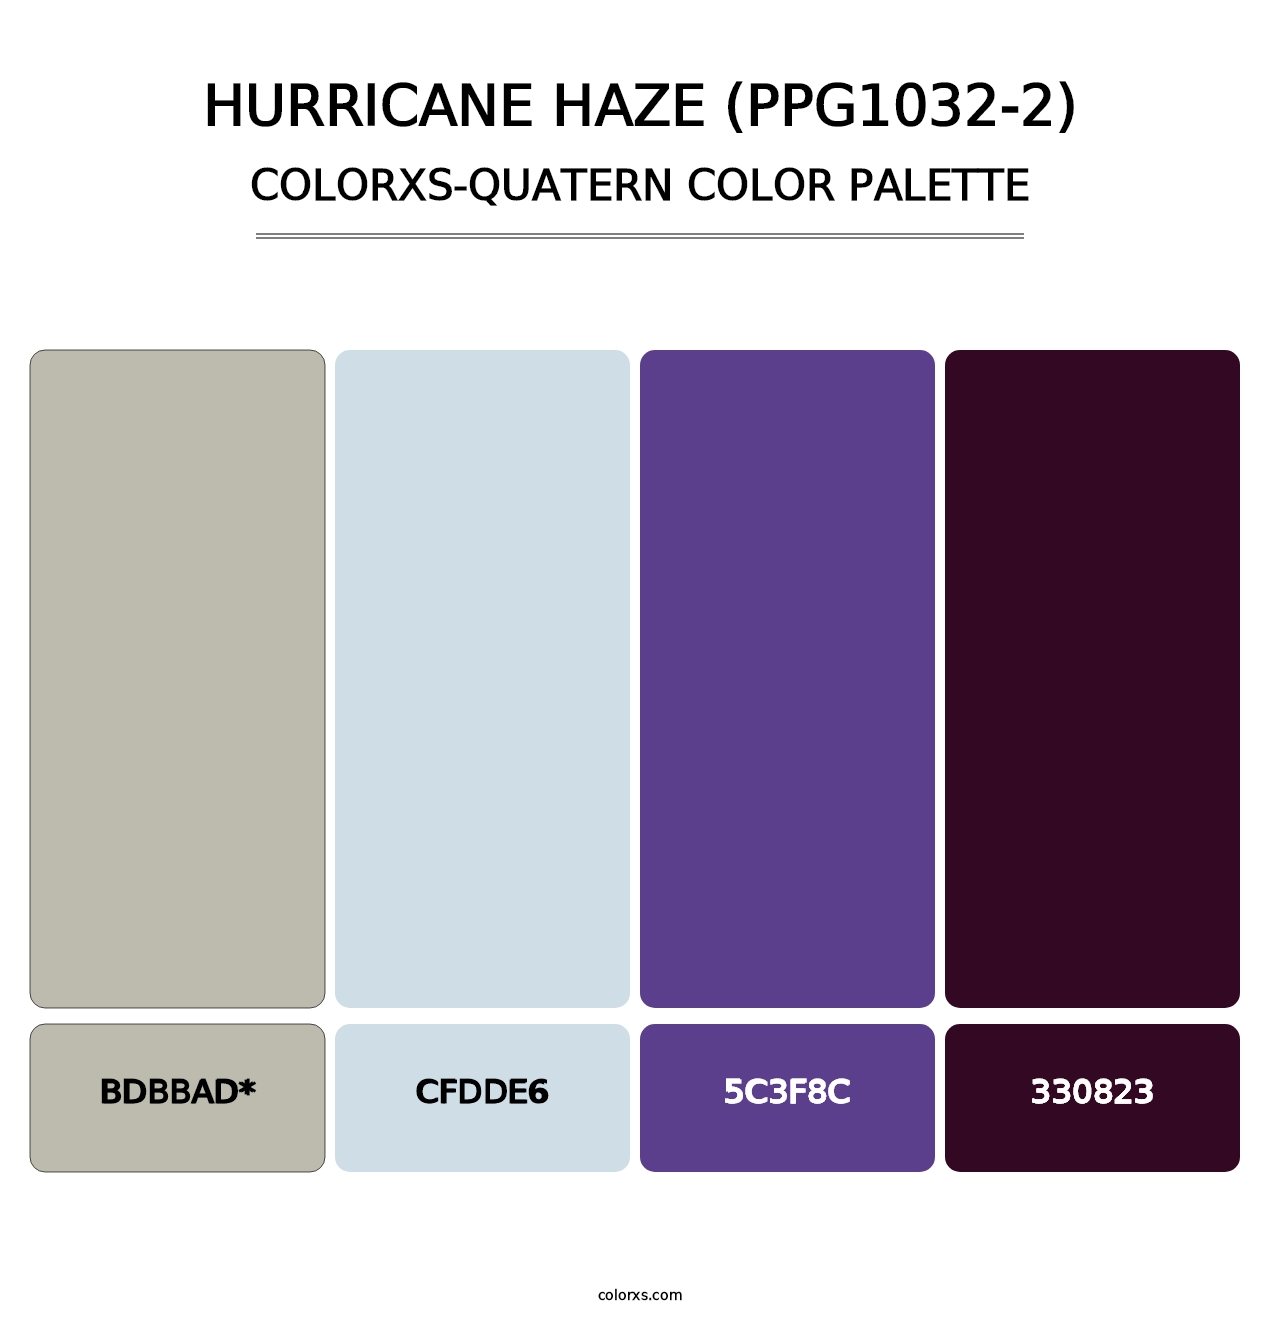 Hurricane Haze (PPG1032-2) - Colorxs Quatern Palette